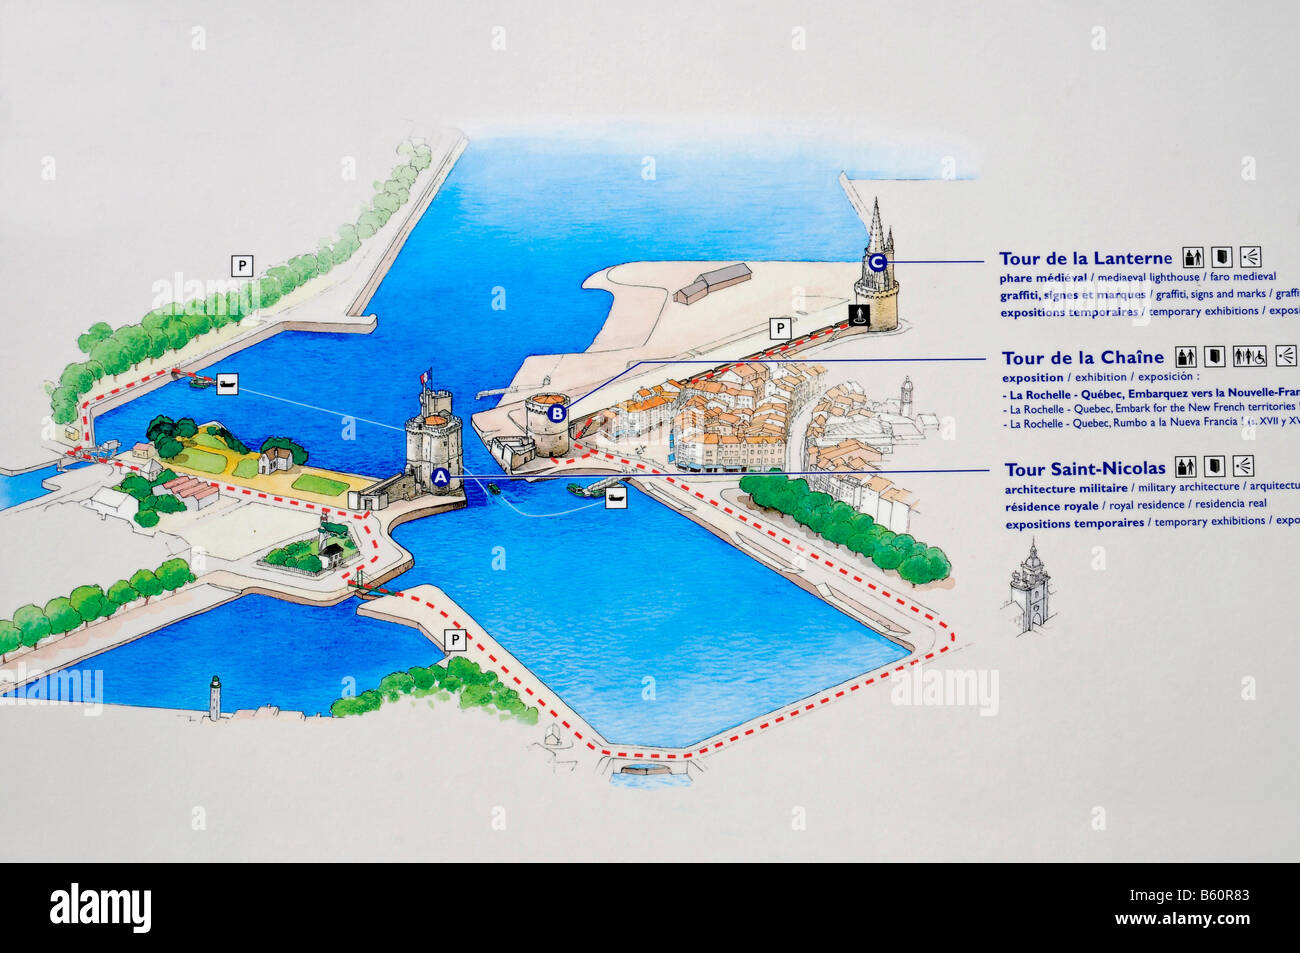 Plan, overview, Tour Saint Nicolas, Tour de la Chaine, Tour de la Lanterne, towers, harbour, La Rochelle, Poitou Charentes Stock Photo